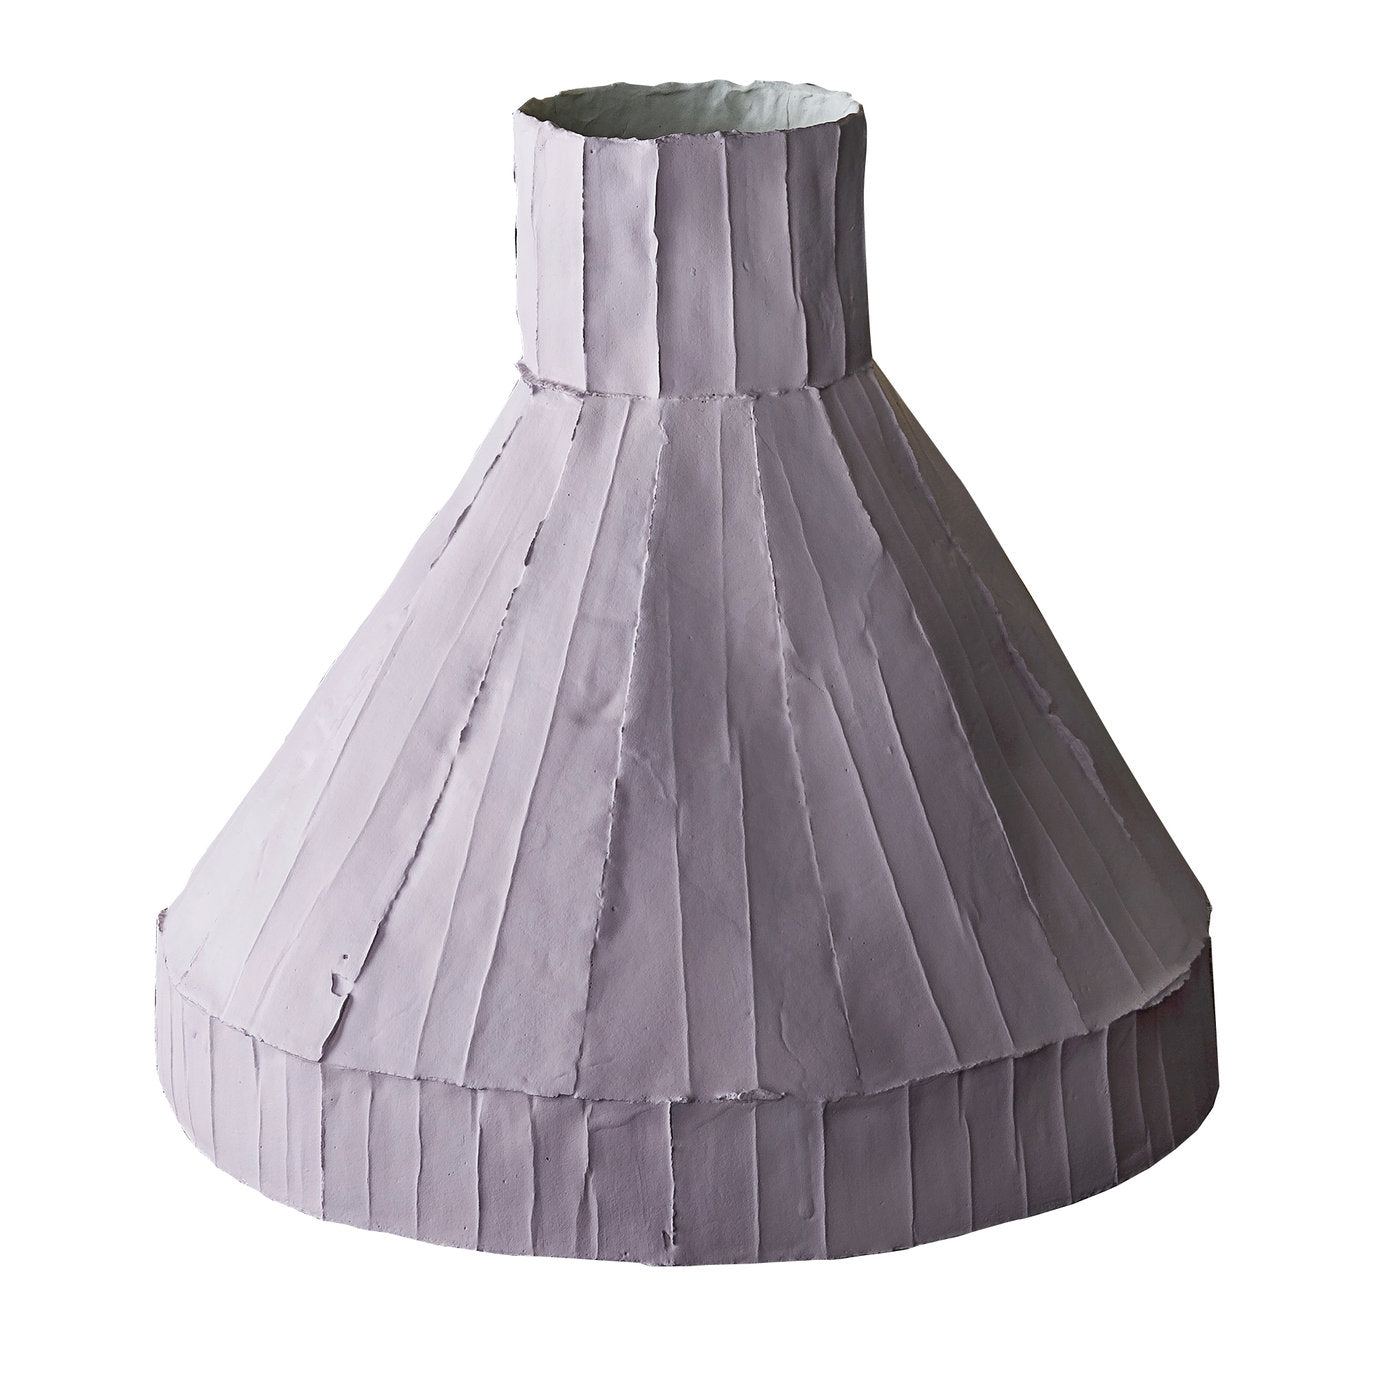 Vulcano Corteccia Lilac Low Vase - Main view